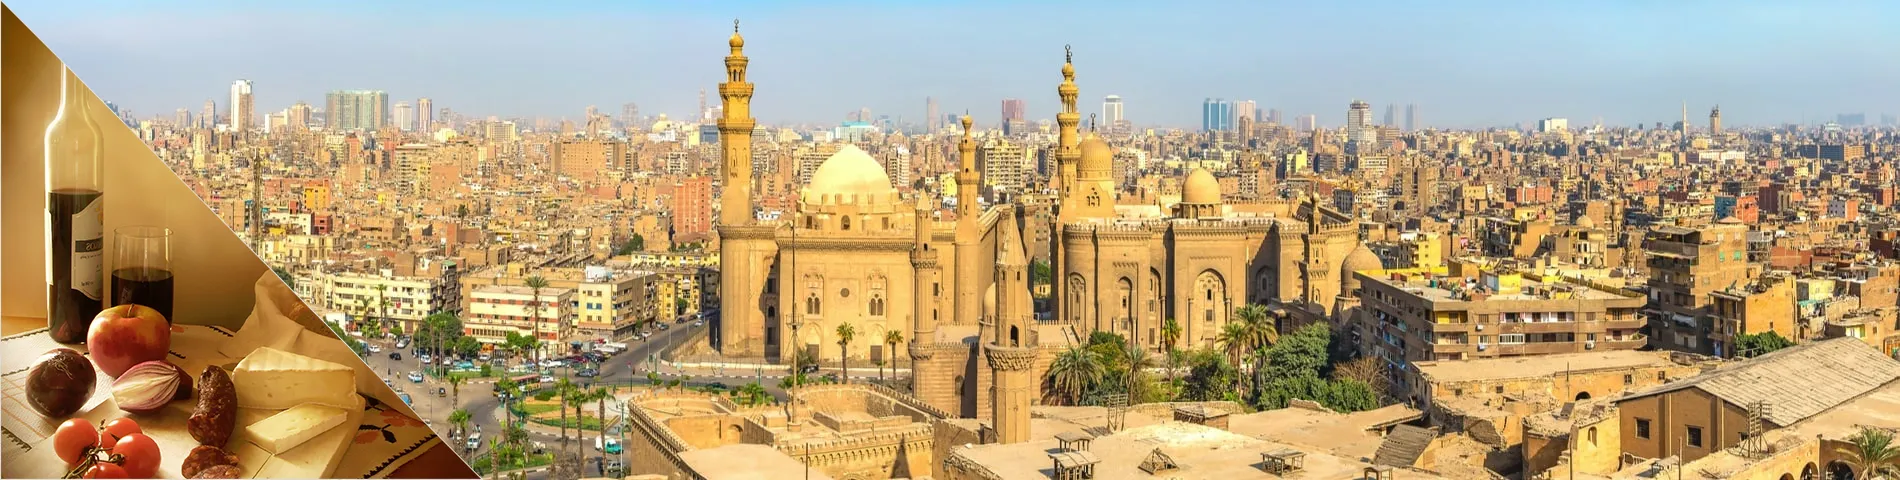 Cairo - Árabe & Cultura 